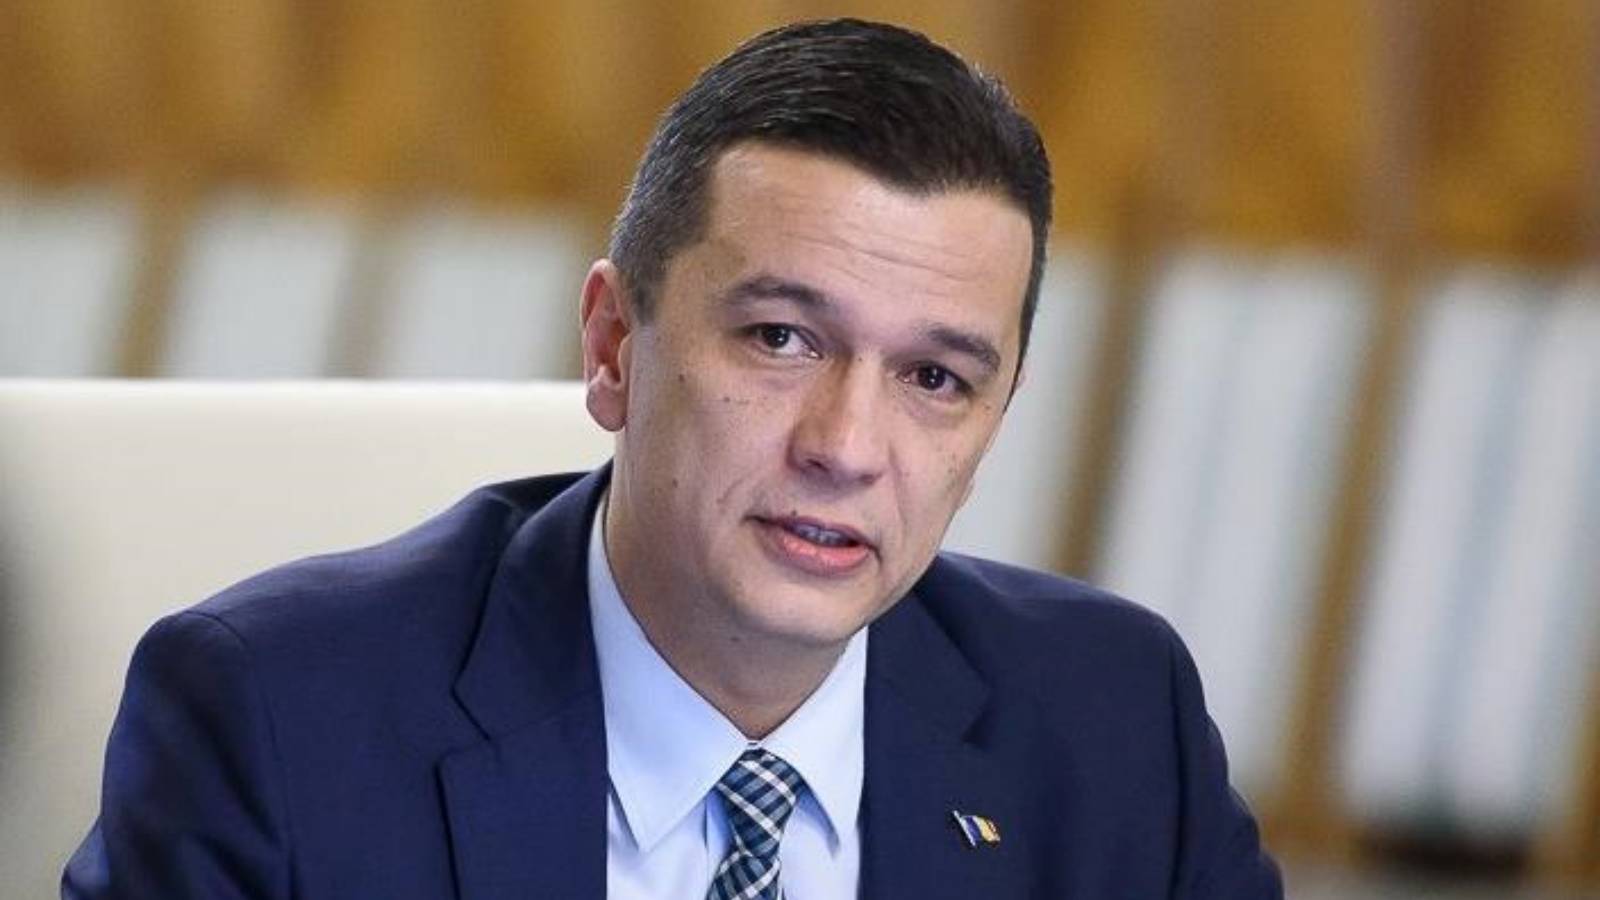 De minister van Verkeer en Waterstaat heeft twee lastminutemaatregelen officieel bevestigd door de Roemenen